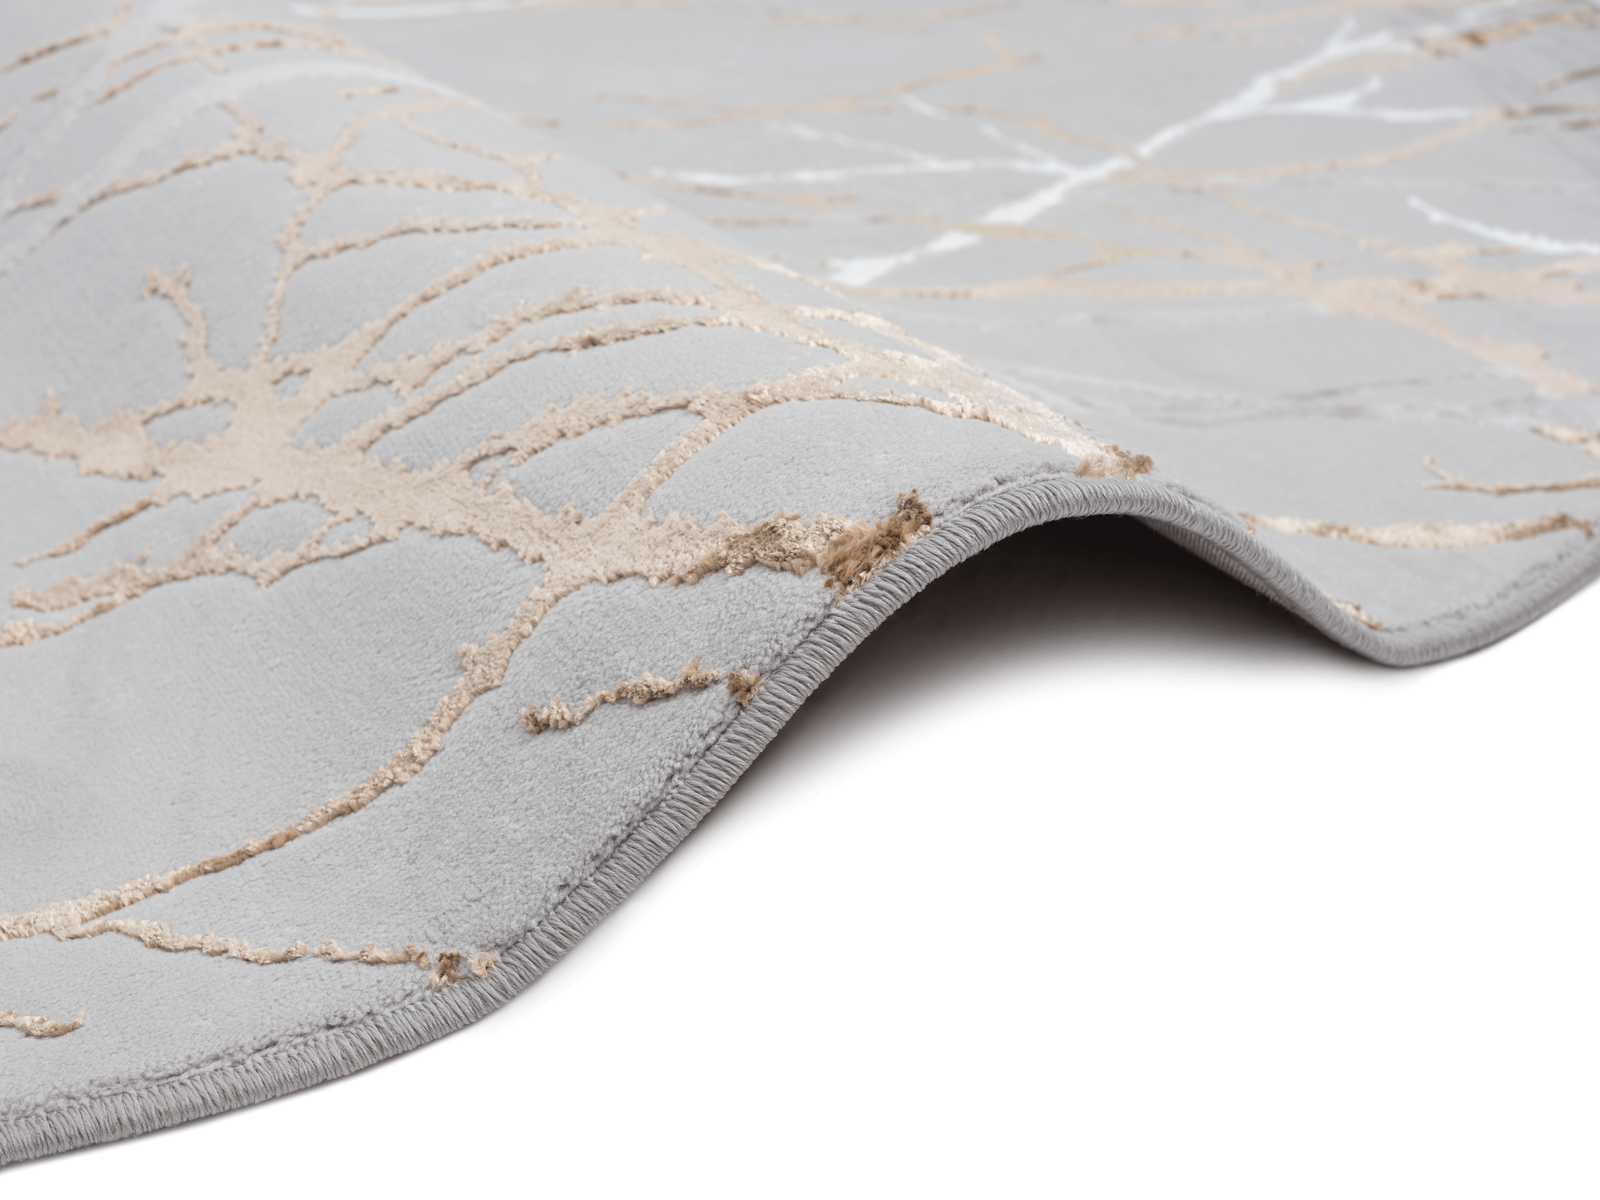             Hoogpolig tapijt met patroon in grijs - 170 x 120 cm
        